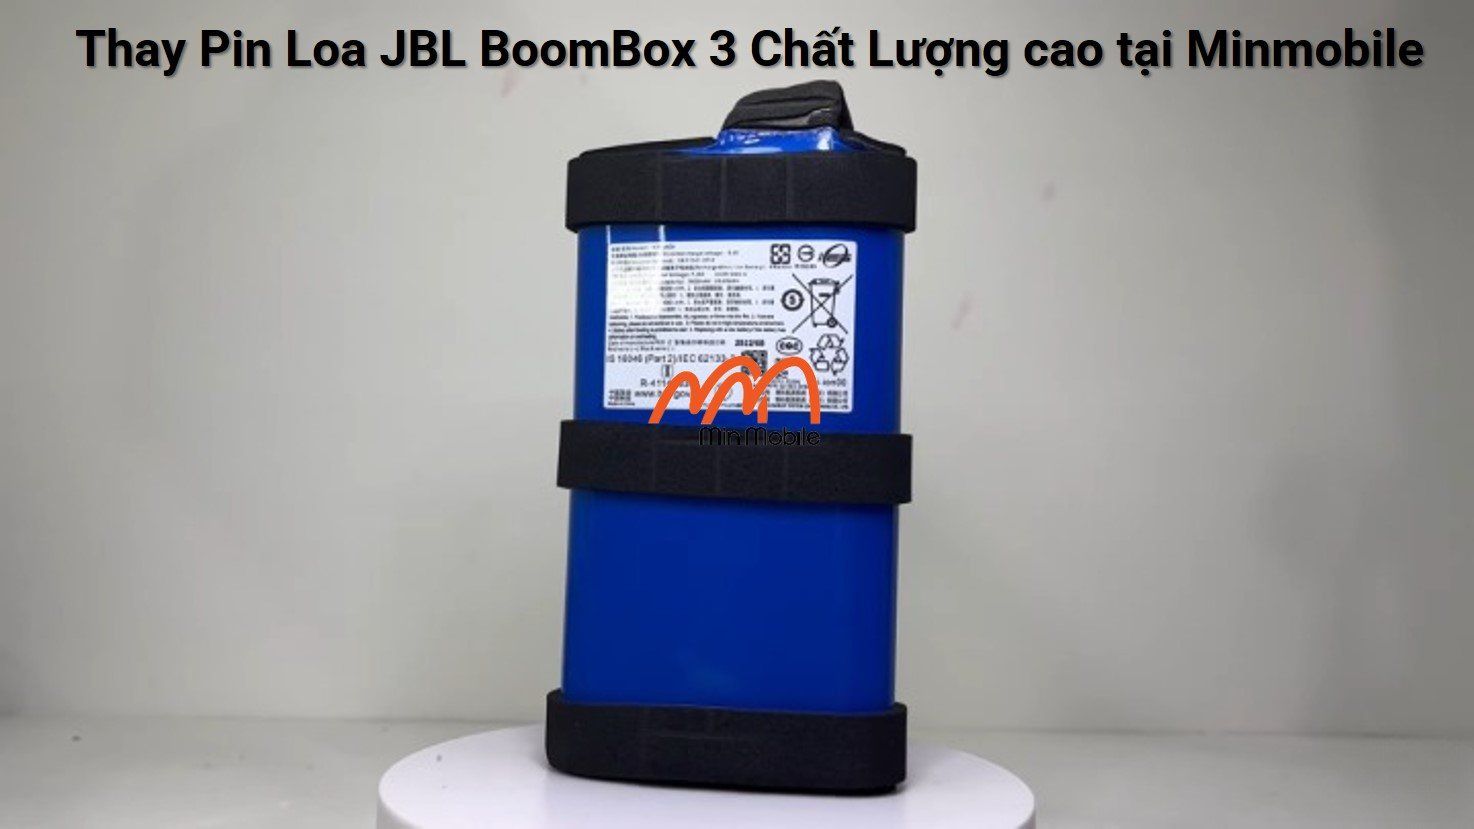 thay-pin-loa-jbl-boombox-3-min-mobile-quan-1-tphcm